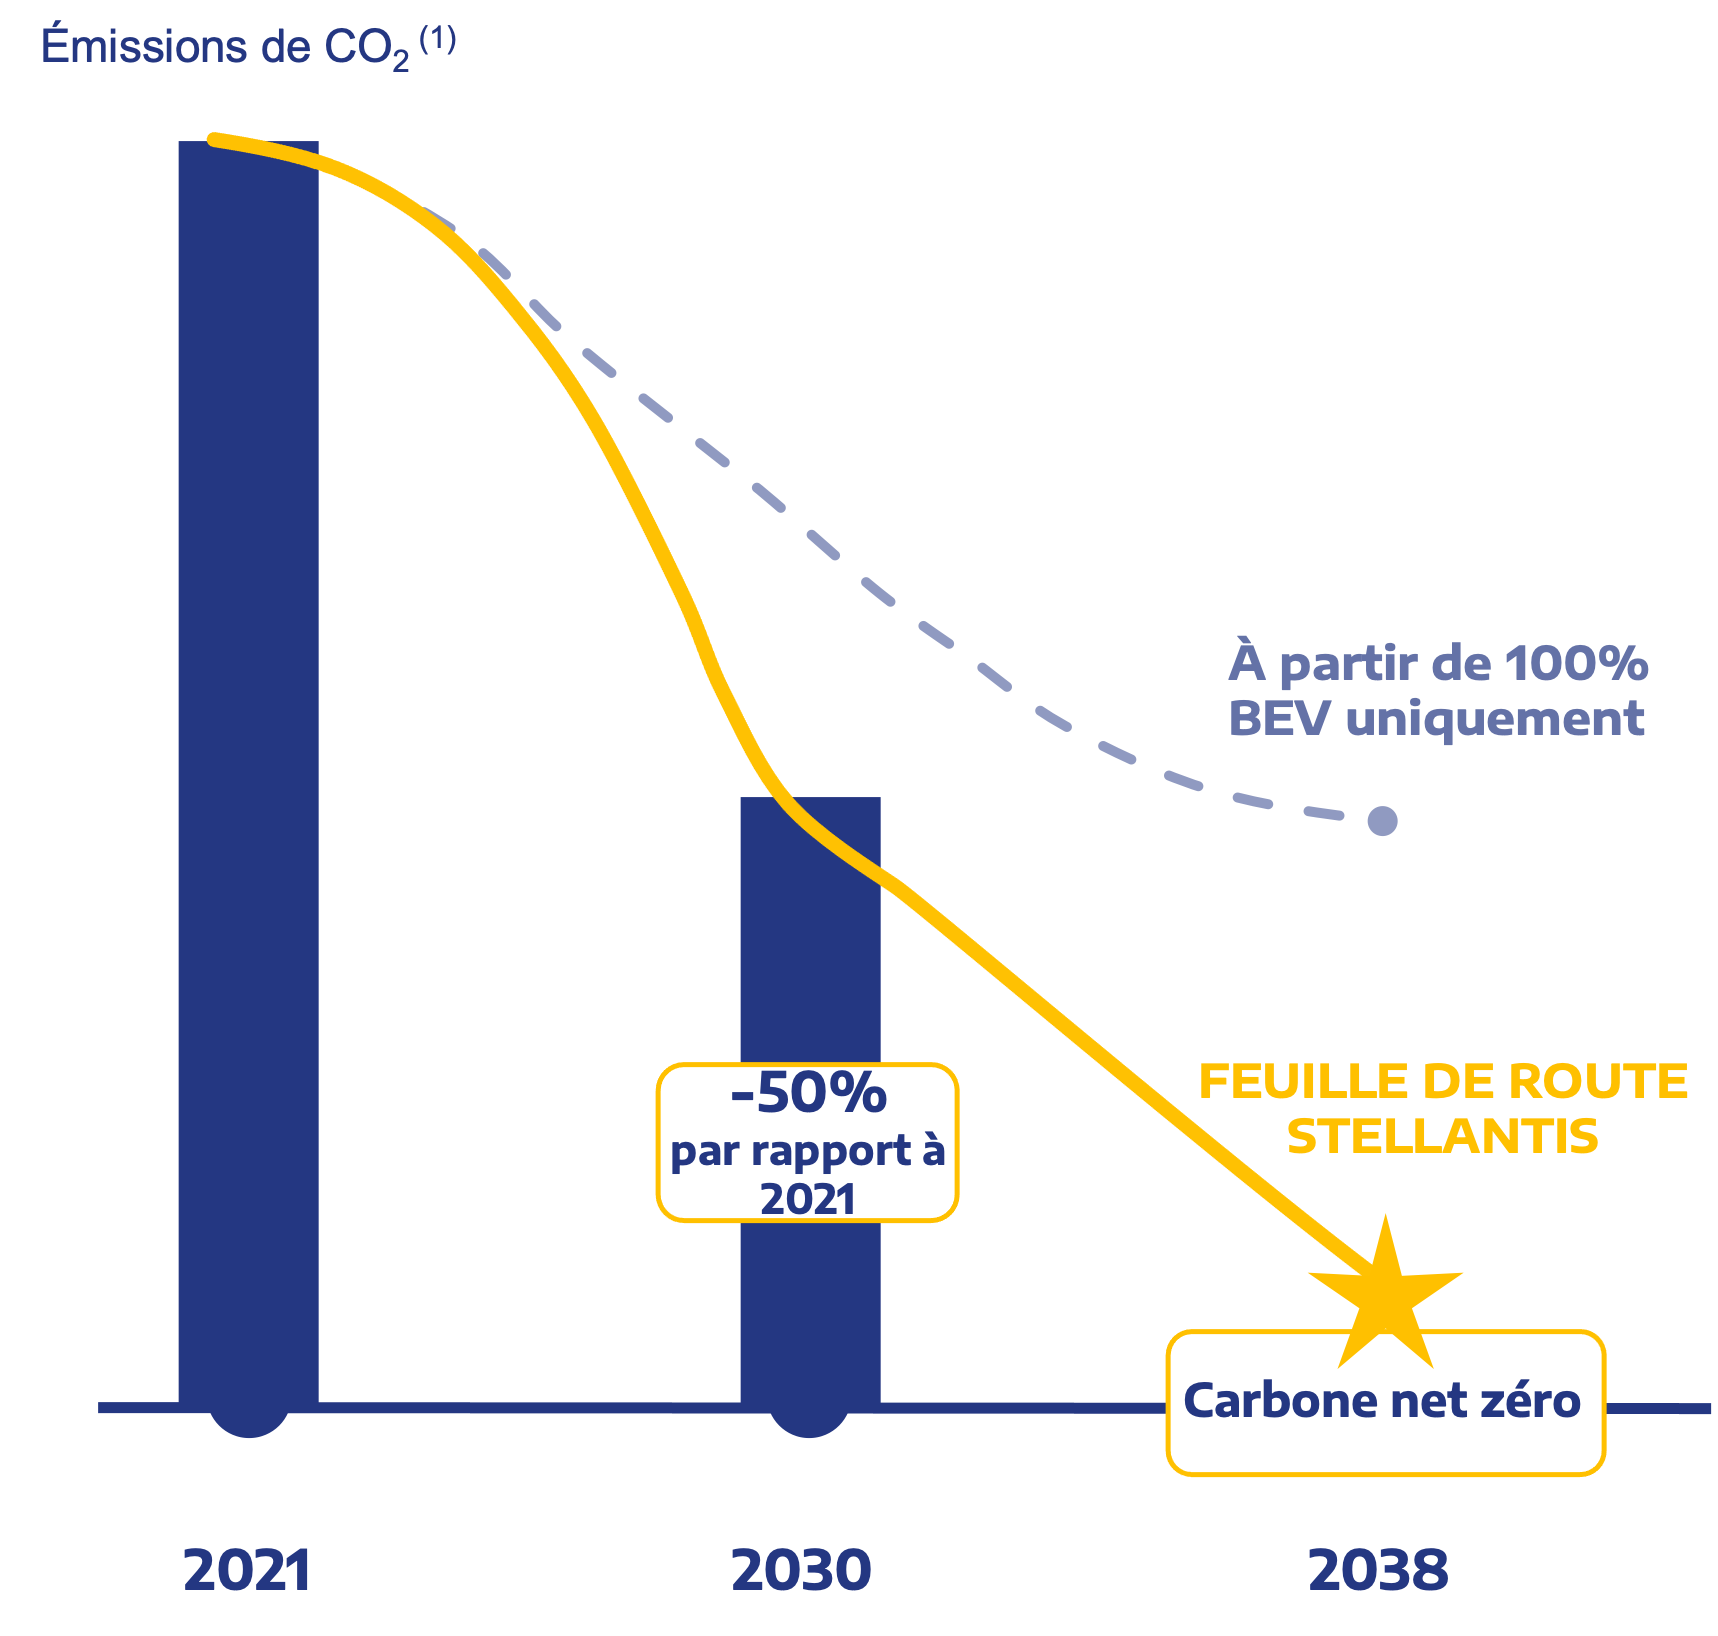 Graphique de l'objectif de Stellantis de réduire les émissions de CO2 de 50 % d'ici 2030 et d'atteindre zéro émission de carbone d'ici 2038